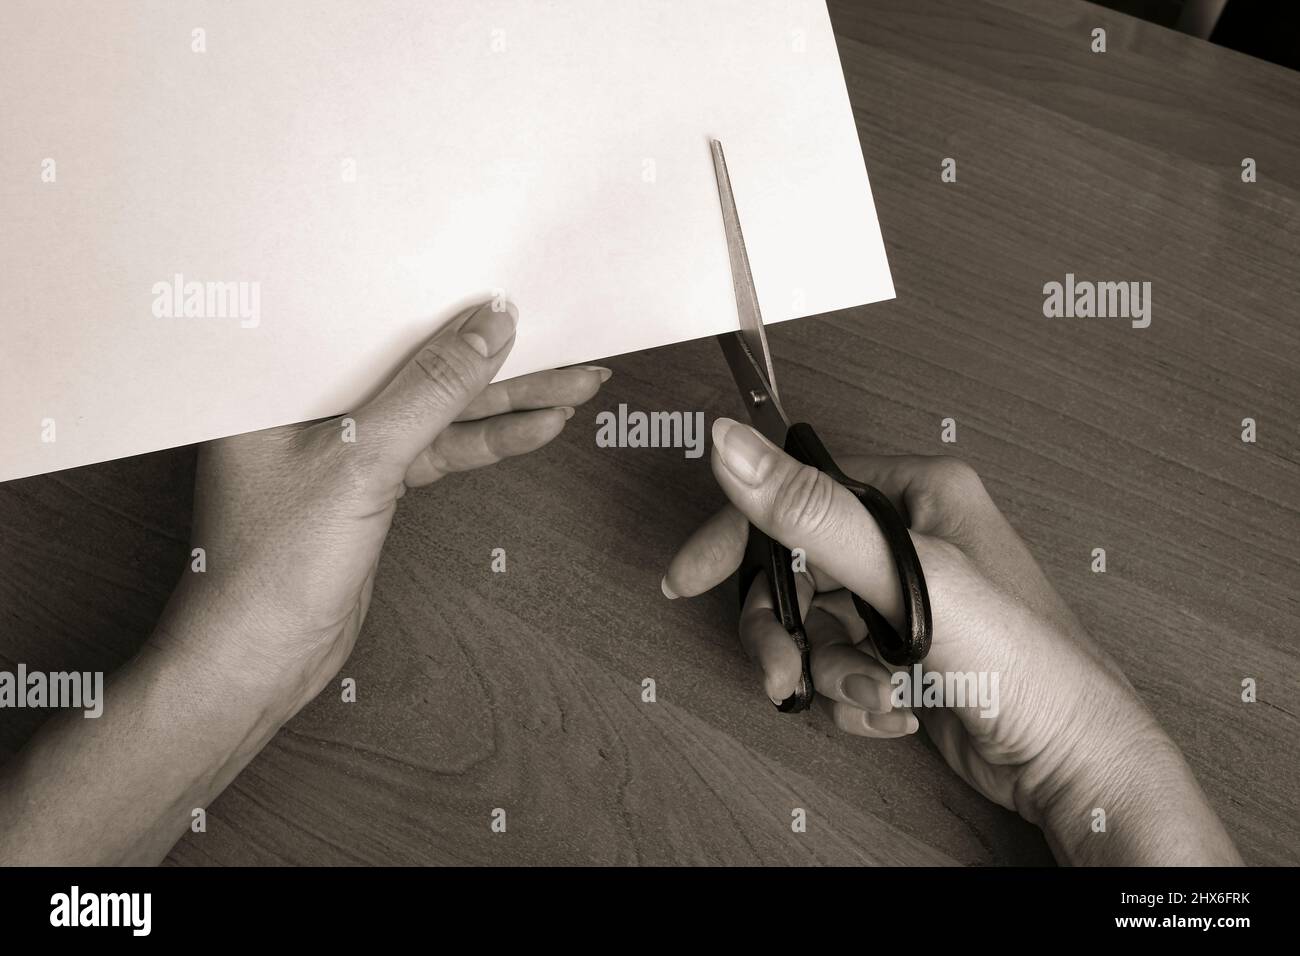 Le mani femminili tagliano un foglio bianco di carta con le forbici. Il concetto di distruzione, rottura, lavoro da ago. Foto Stock